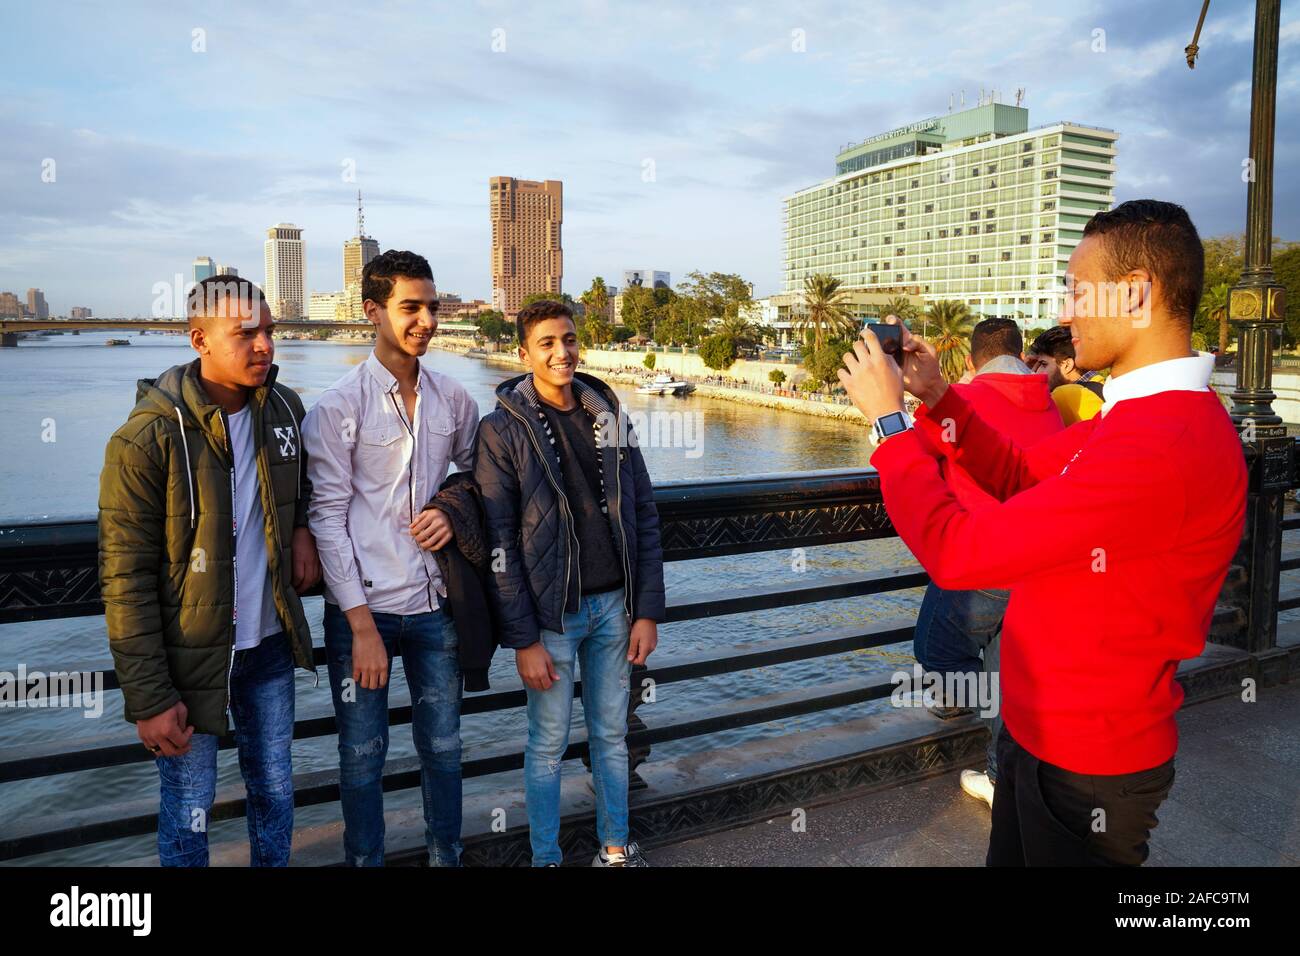 Les jeunes hommes de prendre des photos d'eux-mêmes sur un pont sur le Nil au Caire, Egypte Banque D'Images